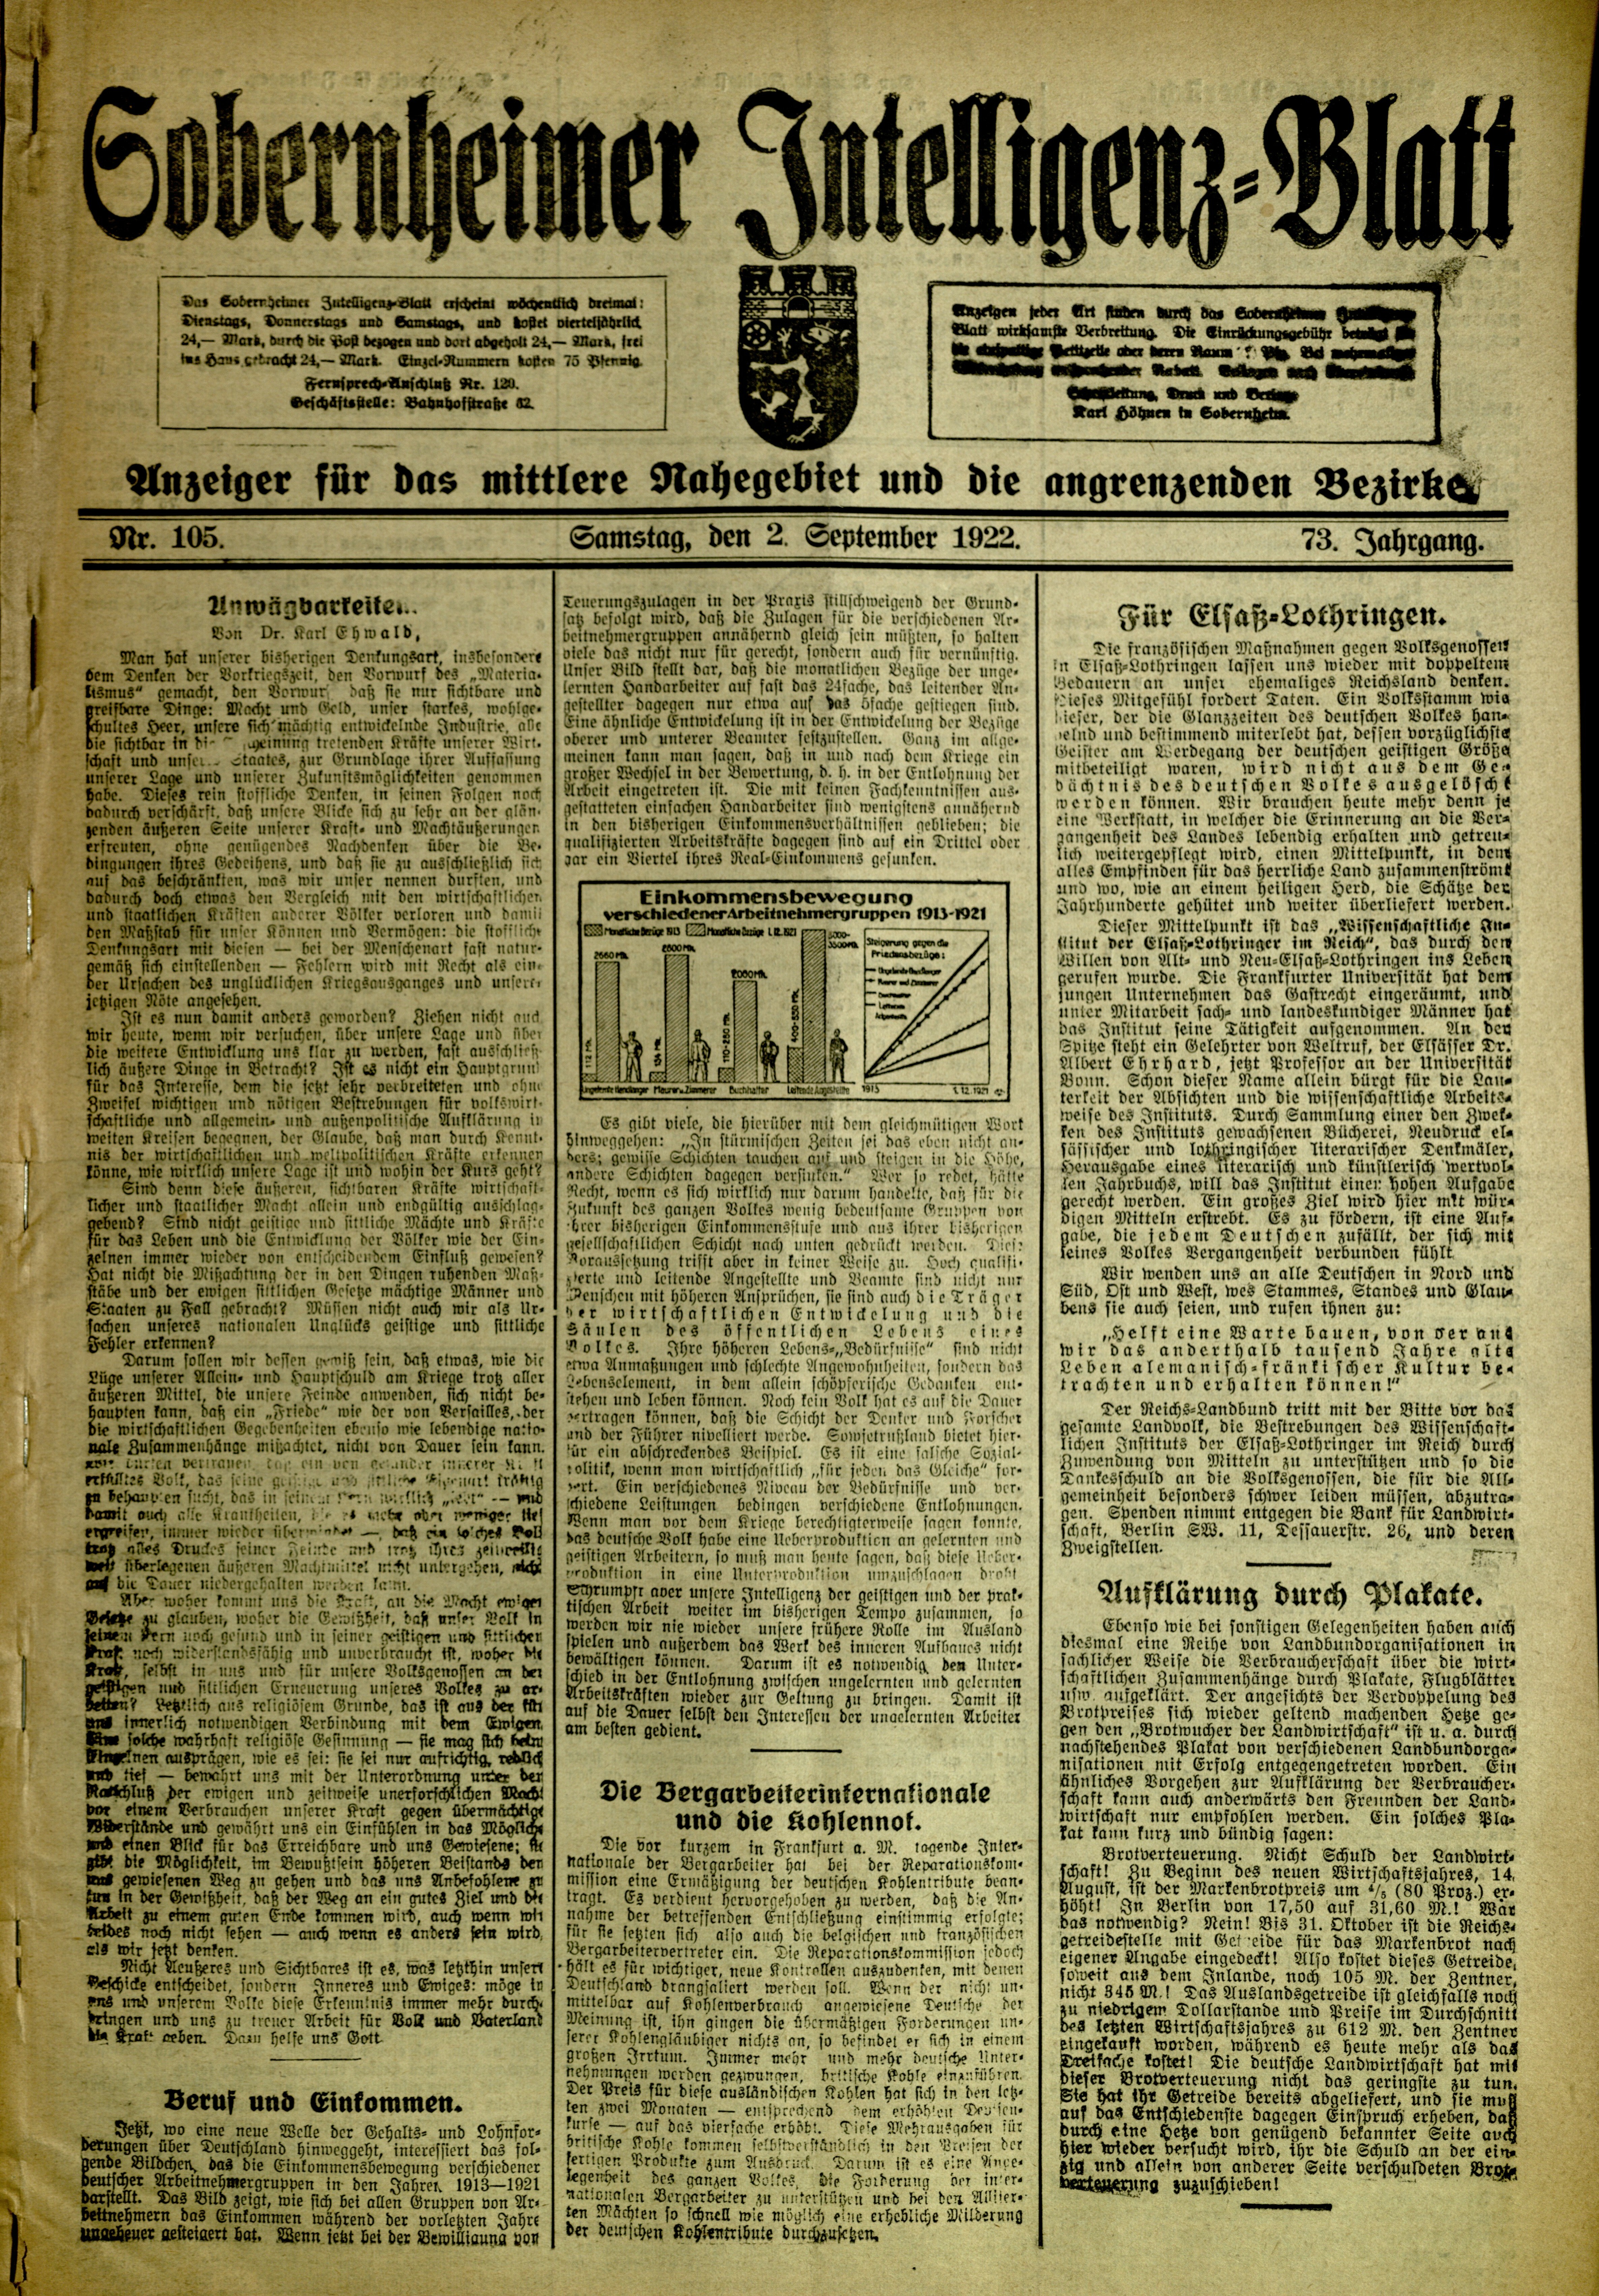 Zeitung: Sobernheimer Intelligenzblatt (September 1950, Jg. 101, Nr. 177) (Heimatmuseum Bad Sobernheim CC BY-NC-SA)